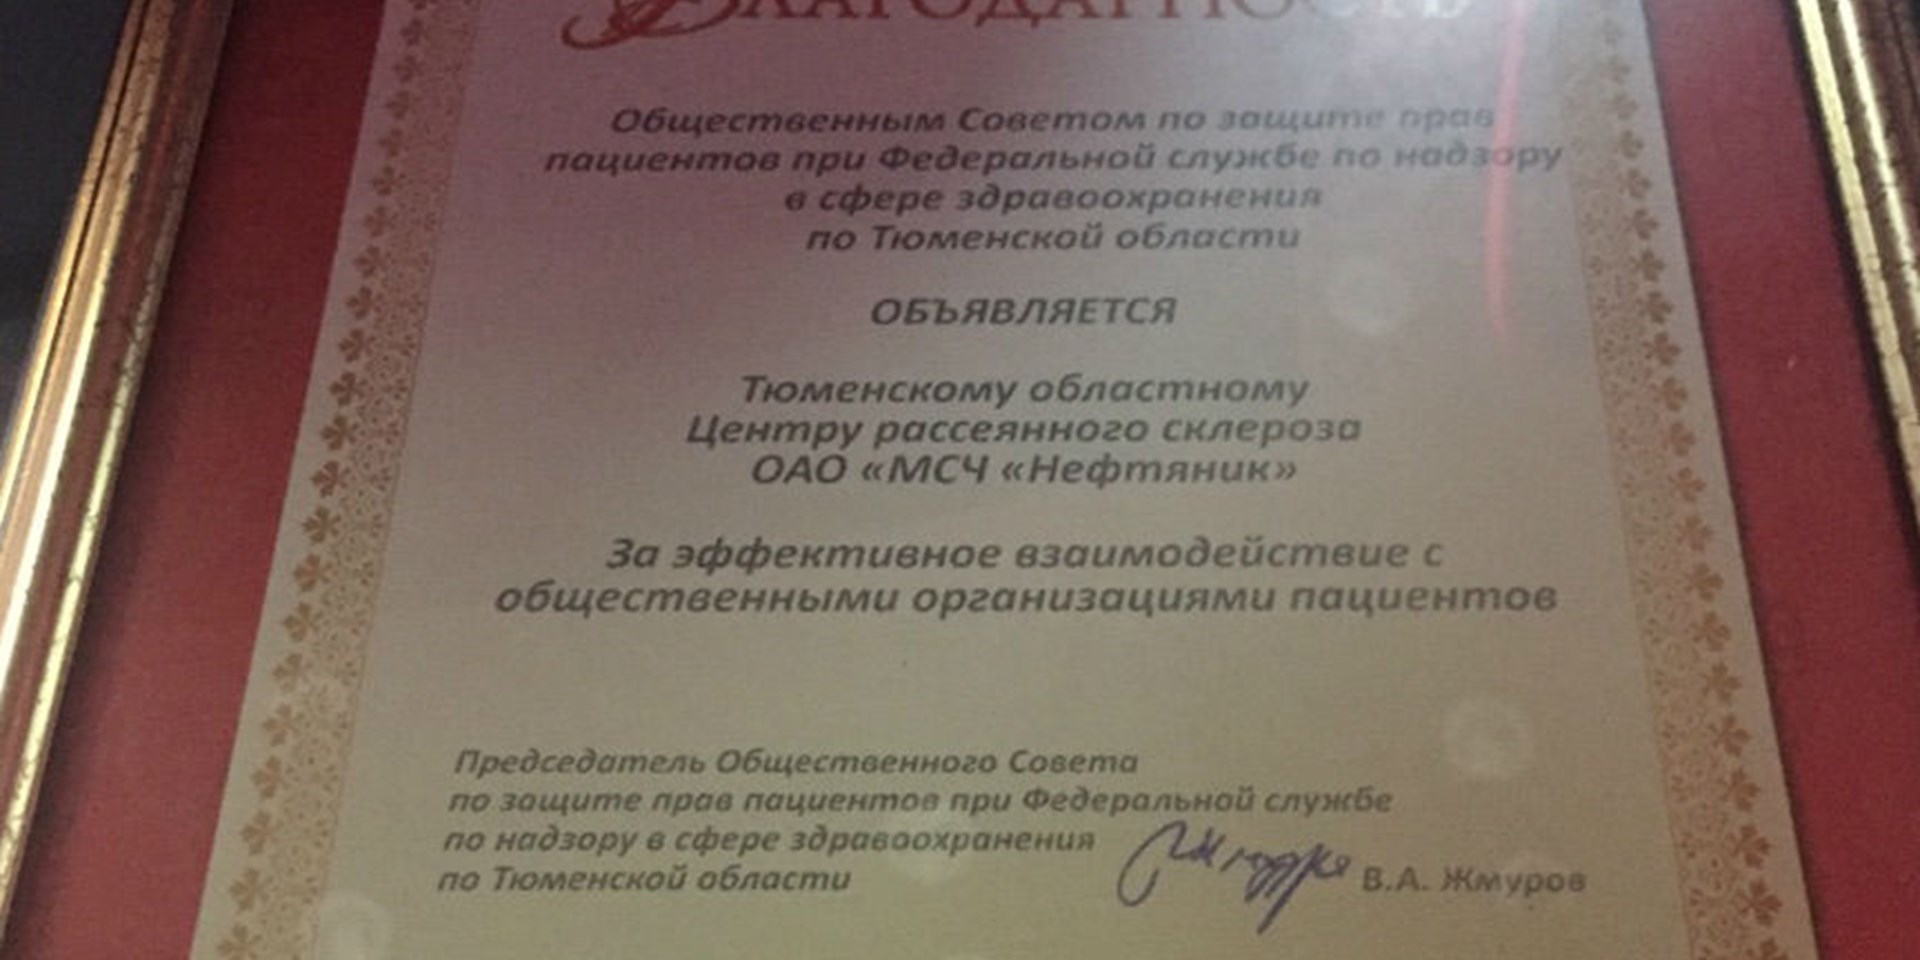 Благодарность Тюменскому областному Центру рассеянного склероза ОАО «МСЧ «Нефтяник»